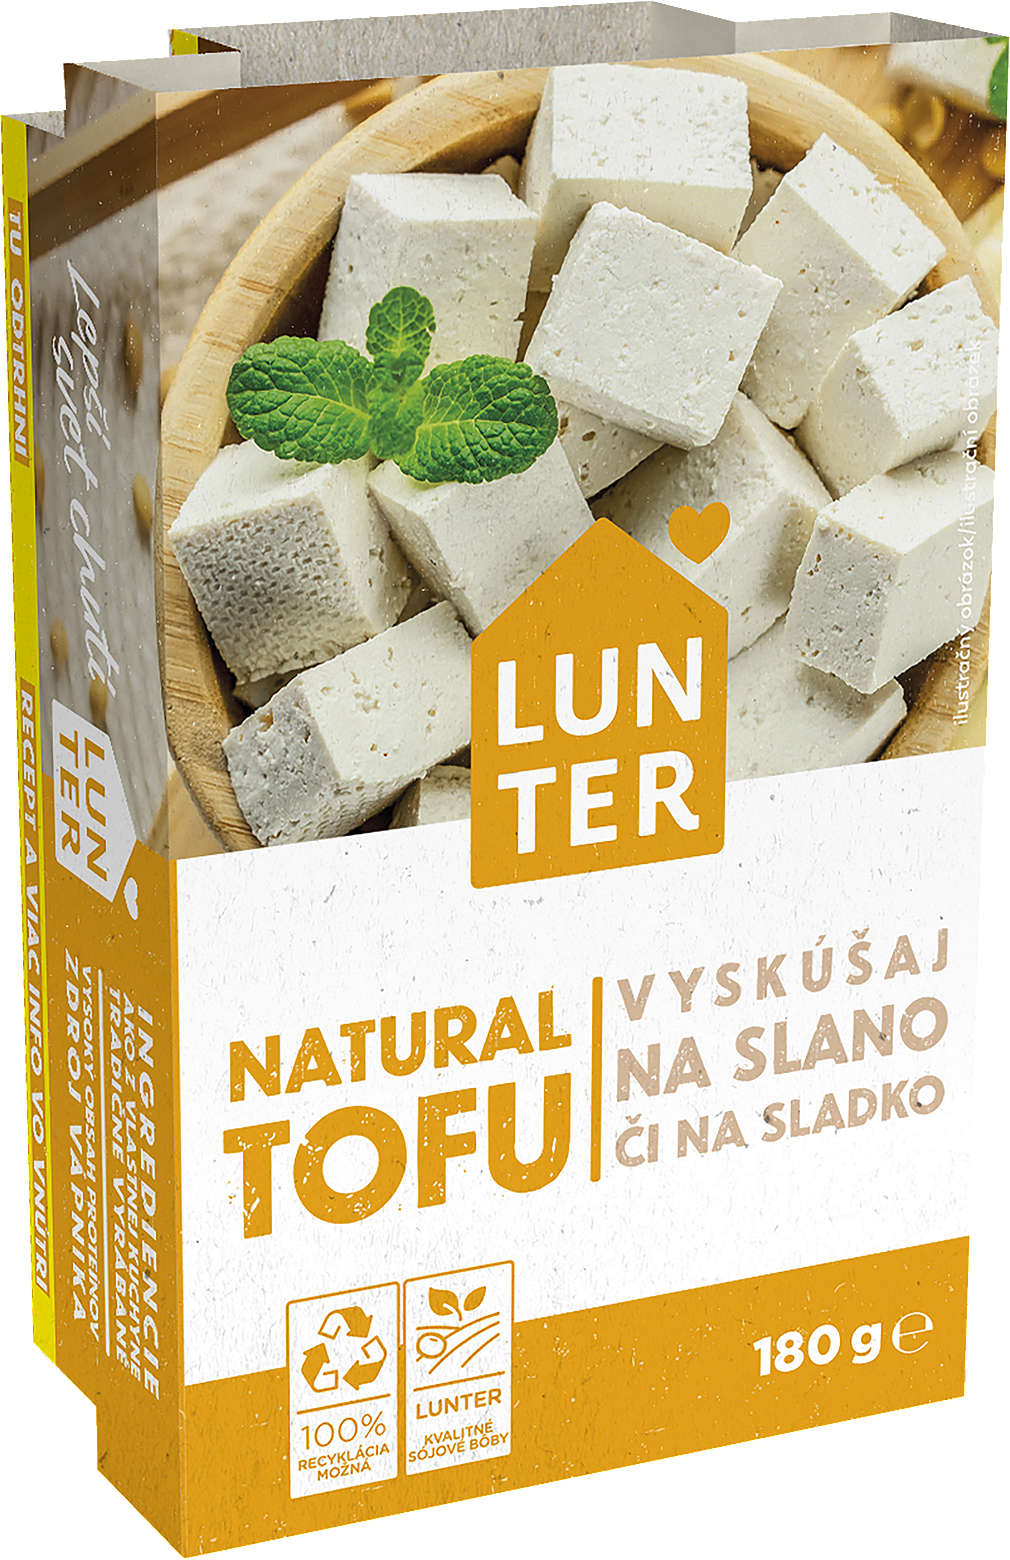 Zobrazit nabídku Lunter Tofu